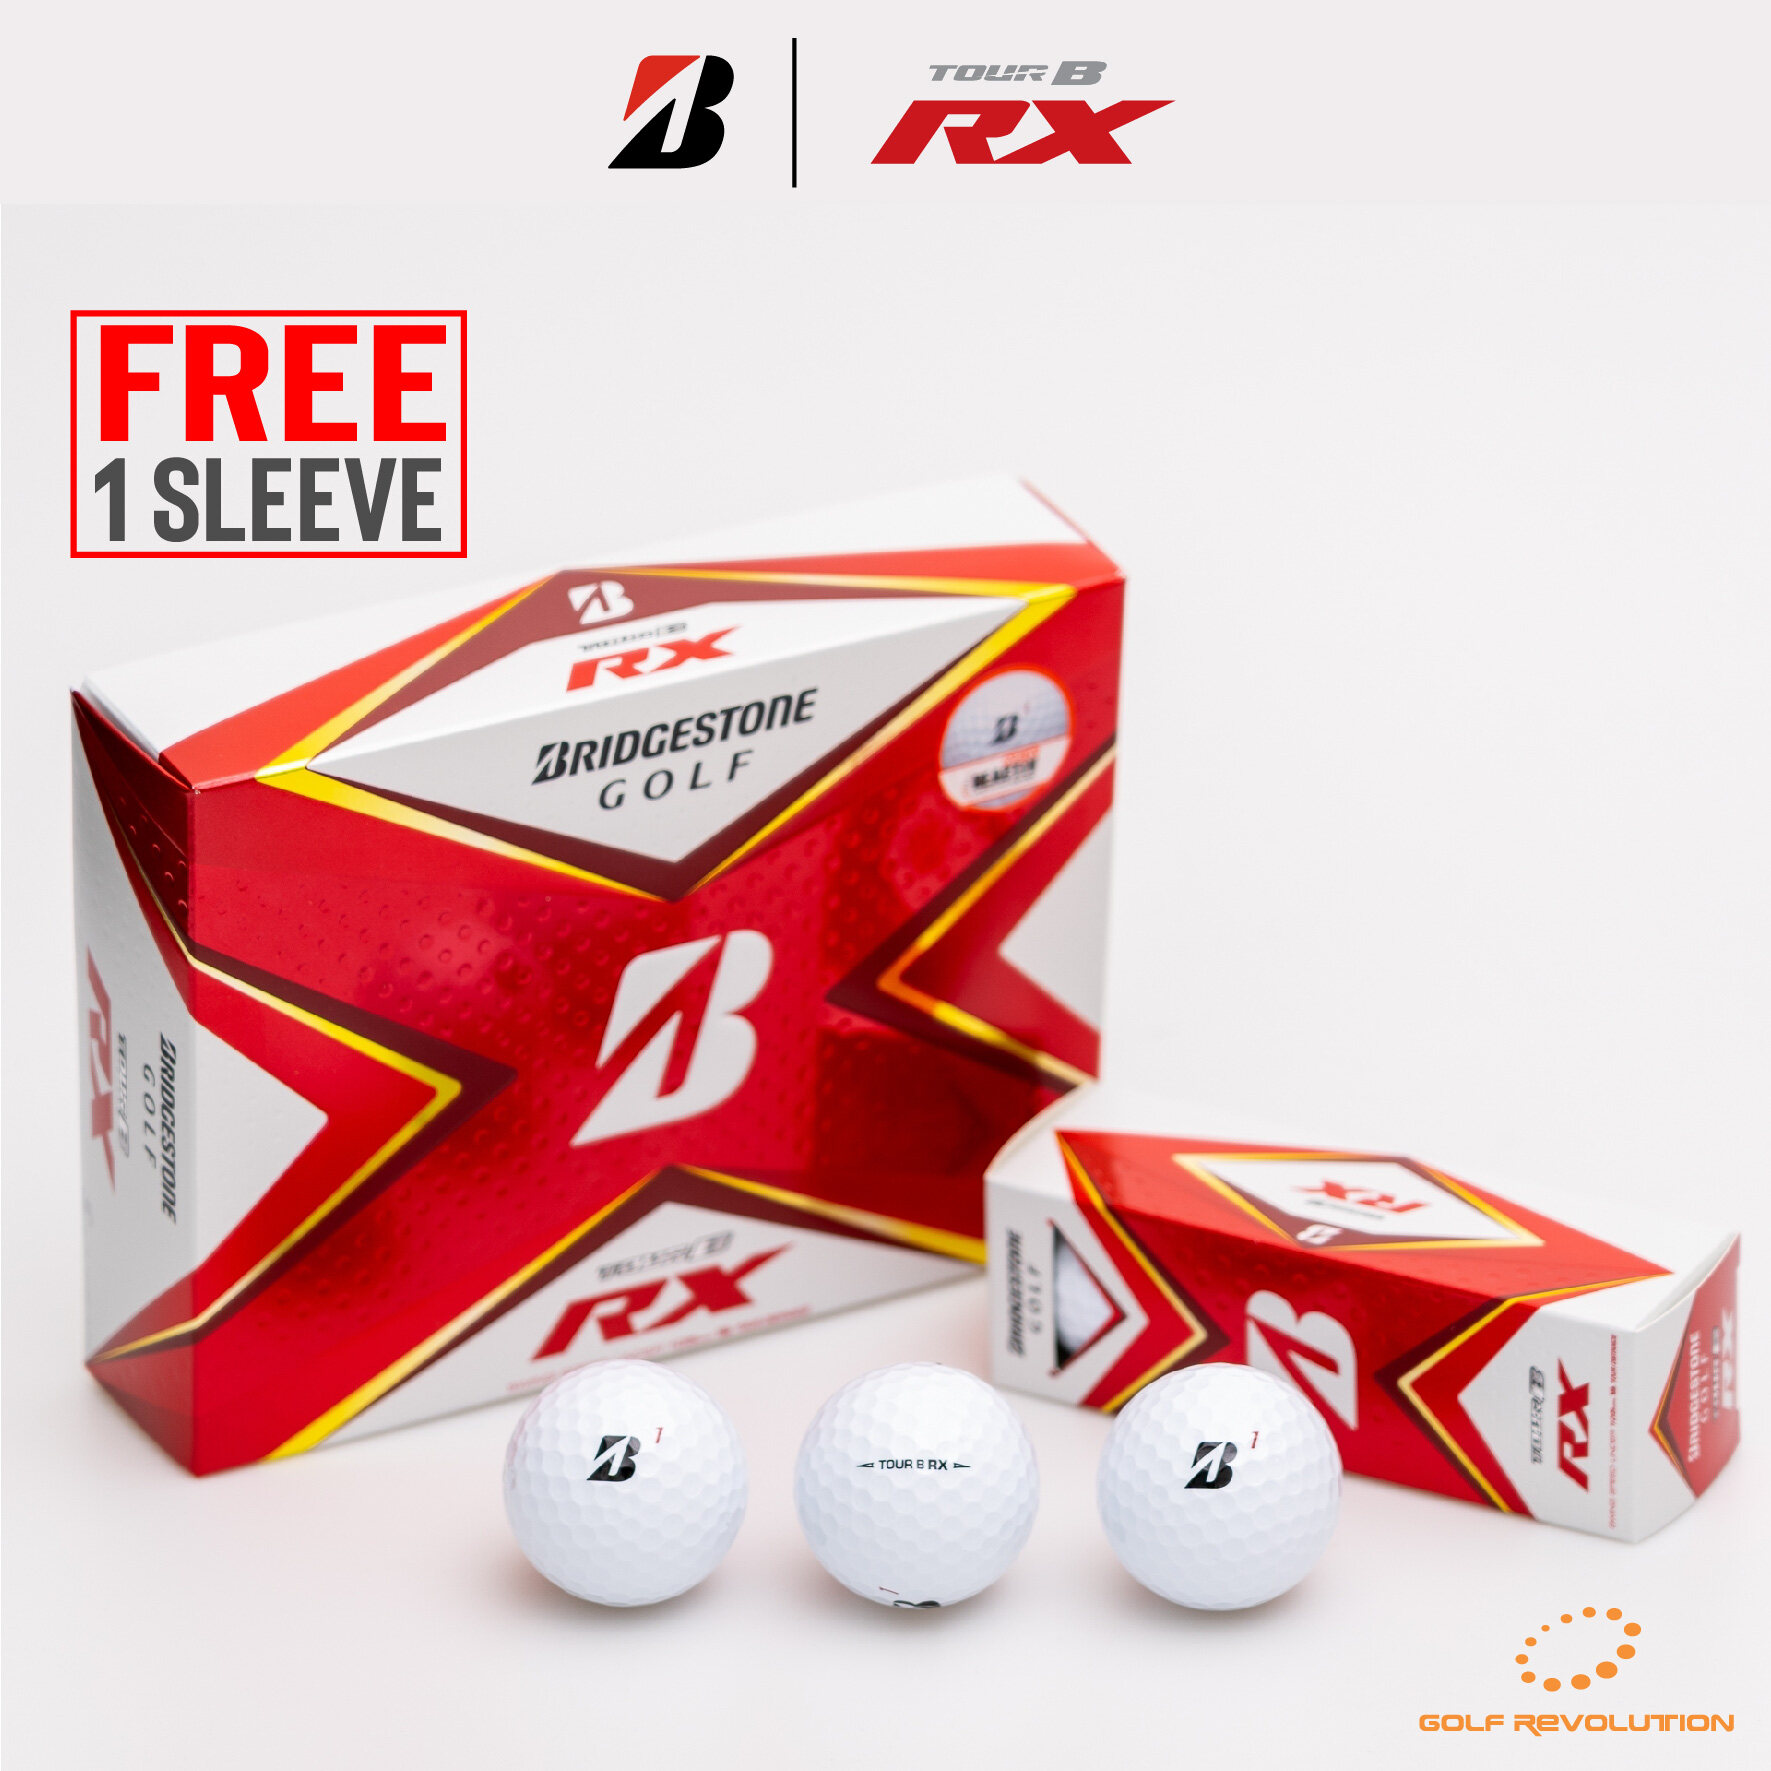 ลูกกอล์ฟ Bridgestone Golf - 2020 TourB RX White ซื้อ 1 แถม 1 หลอด (Buy1, Free1 sleeve)